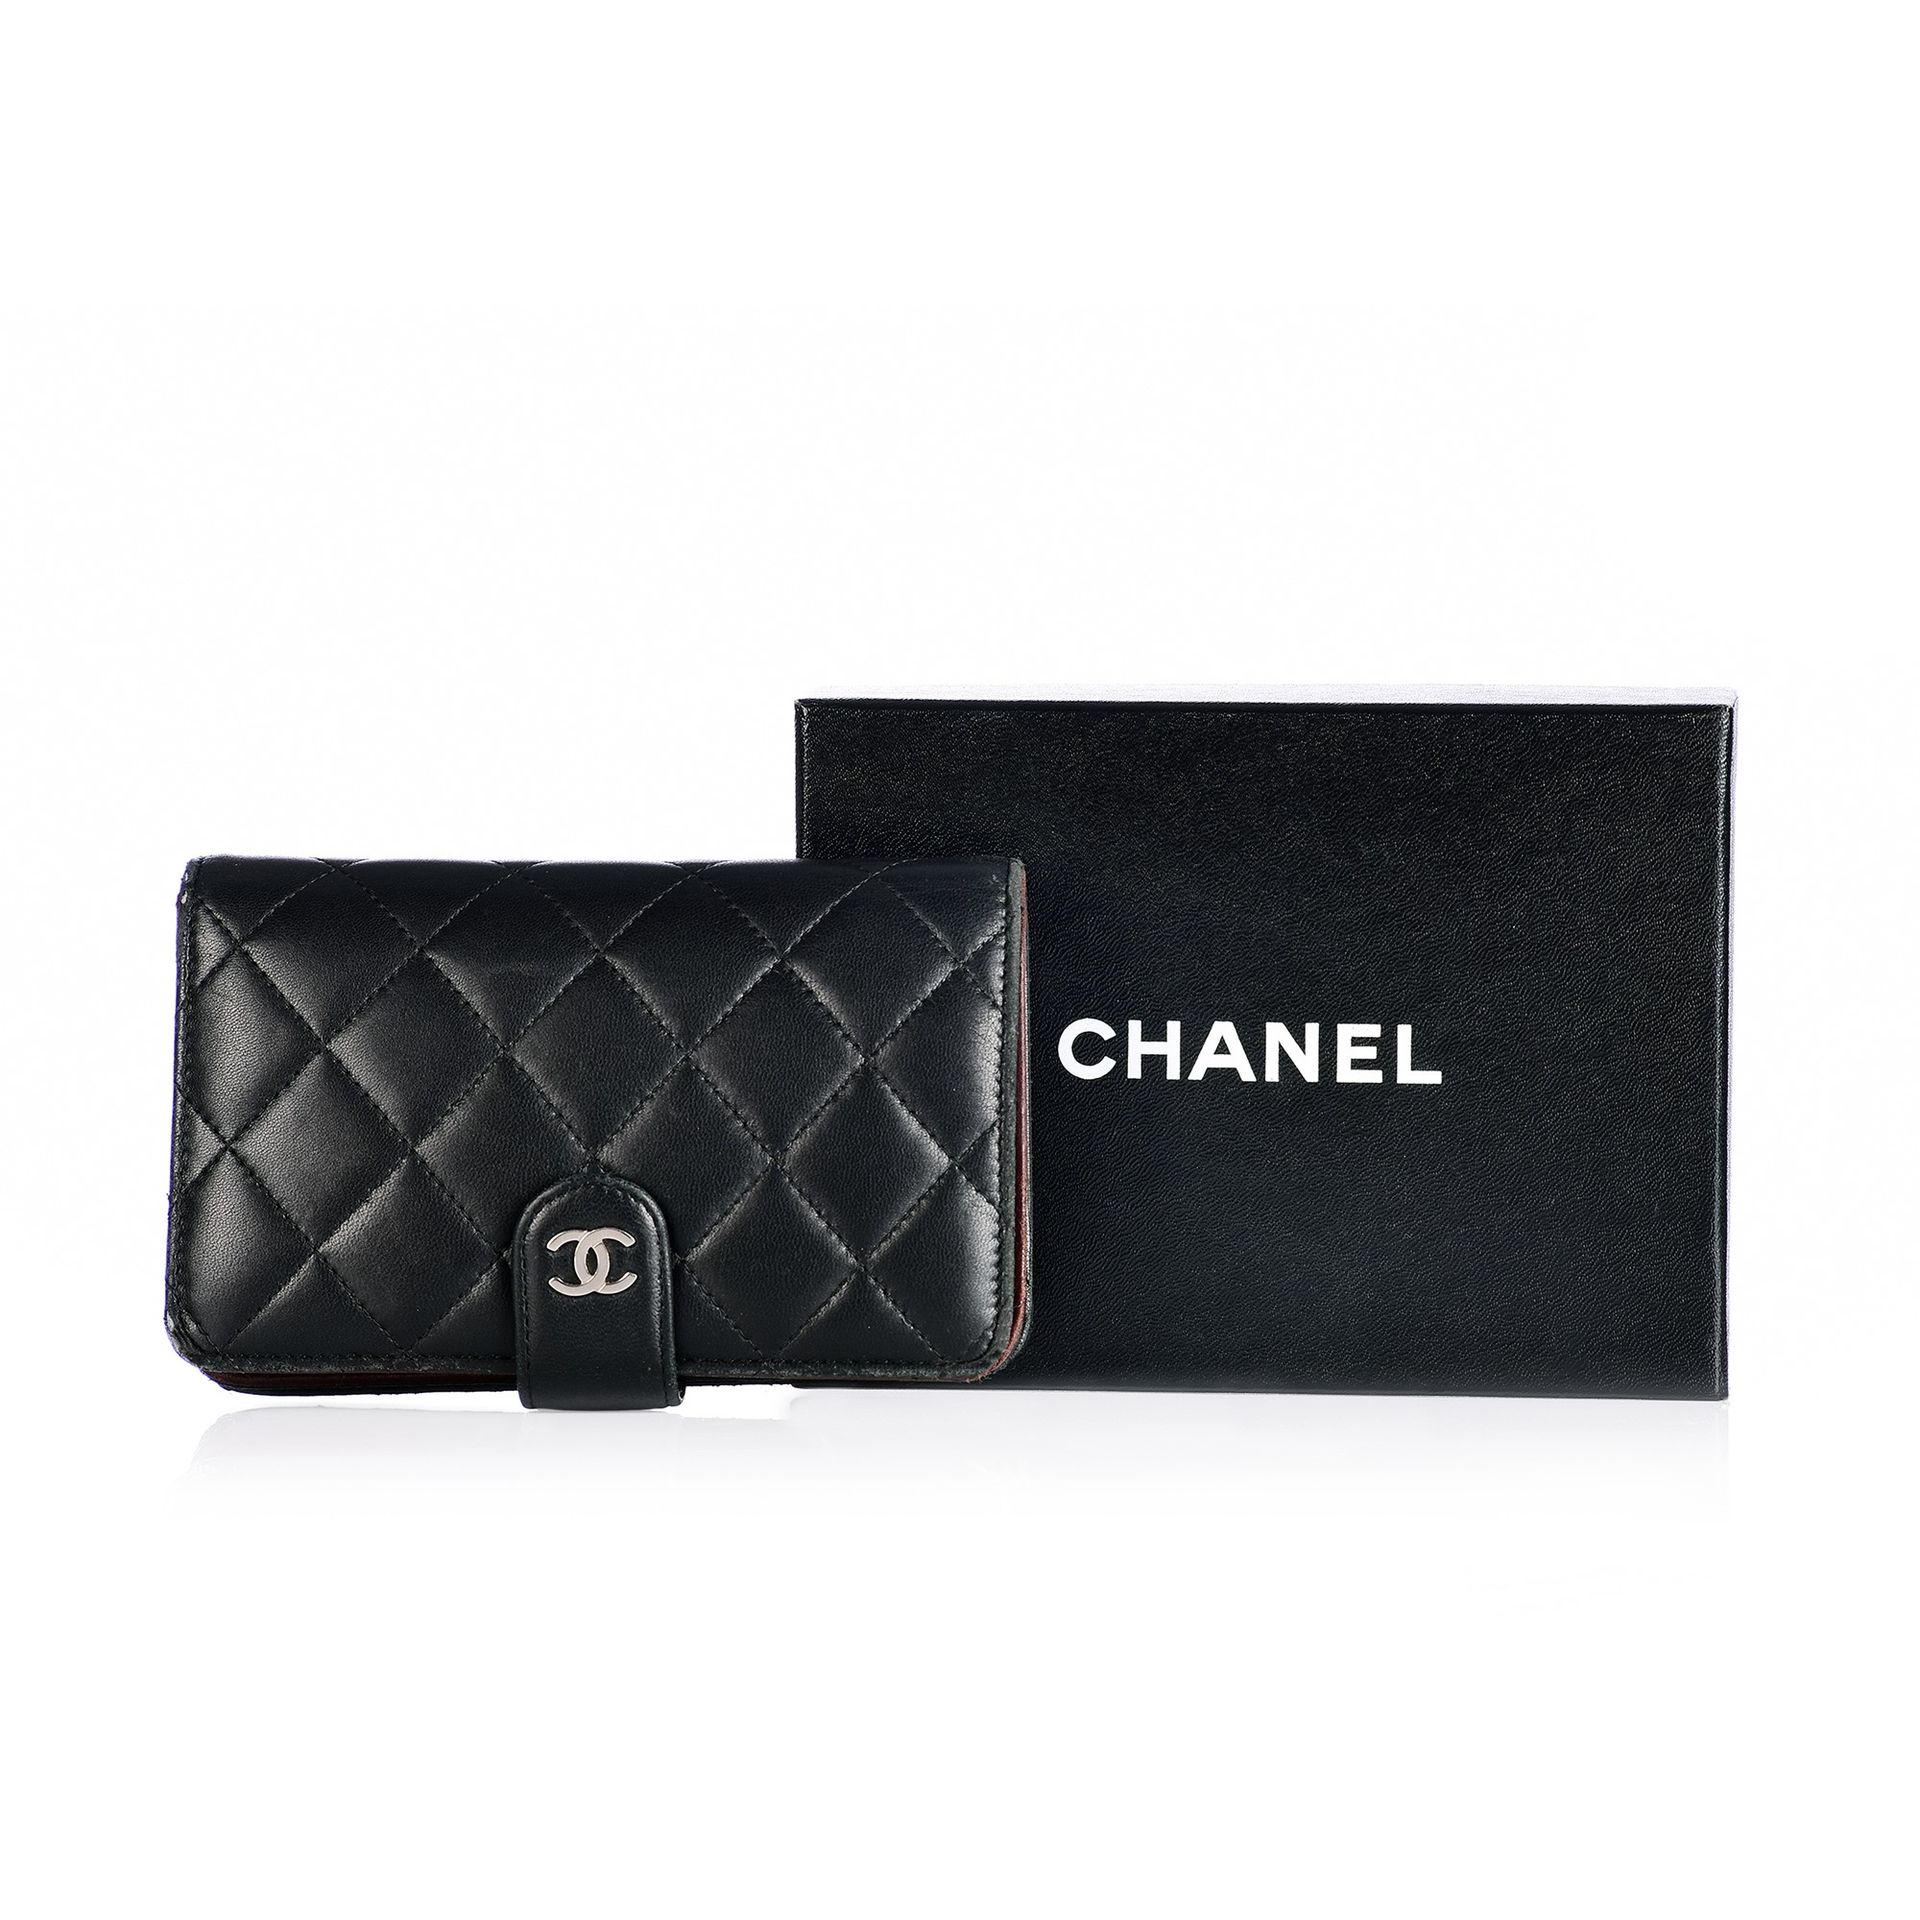 CHANEL Portafoglio Chanel en piel negra matelassè, interno en piel prugna con po&hellip;